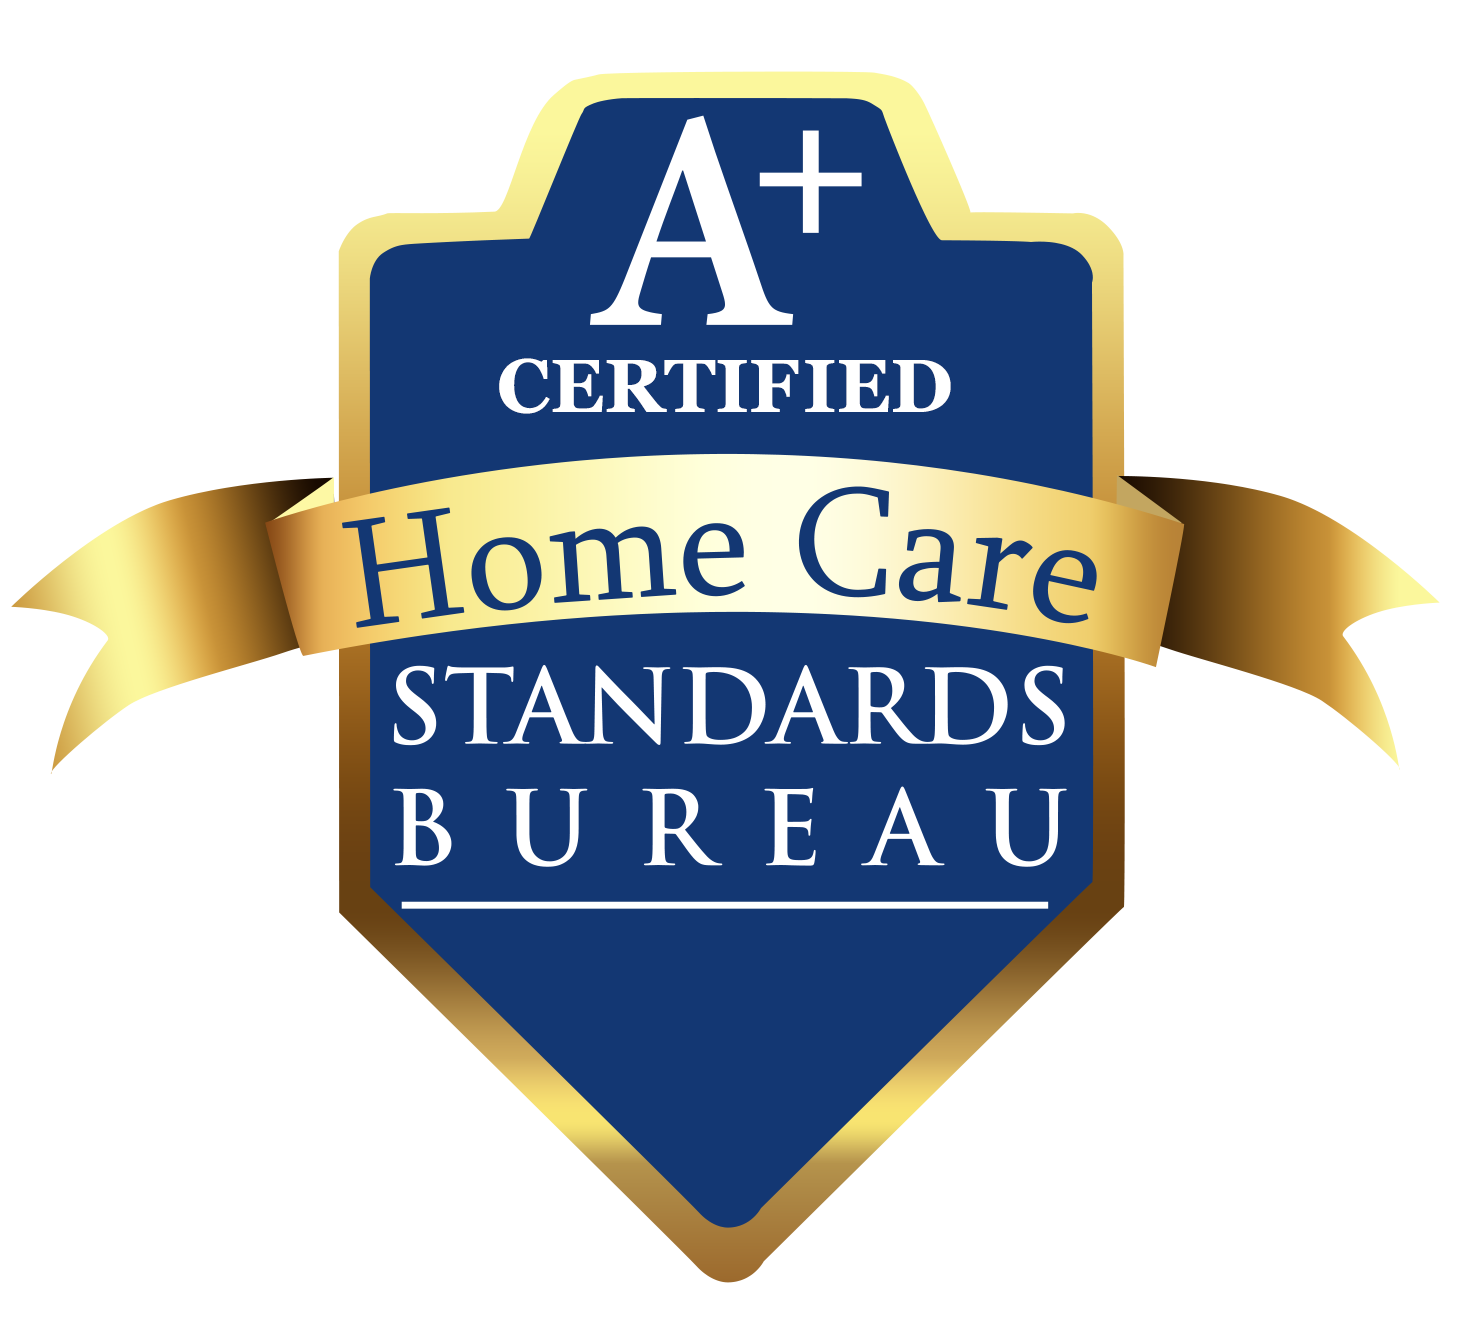 Home Care Standards Bureau